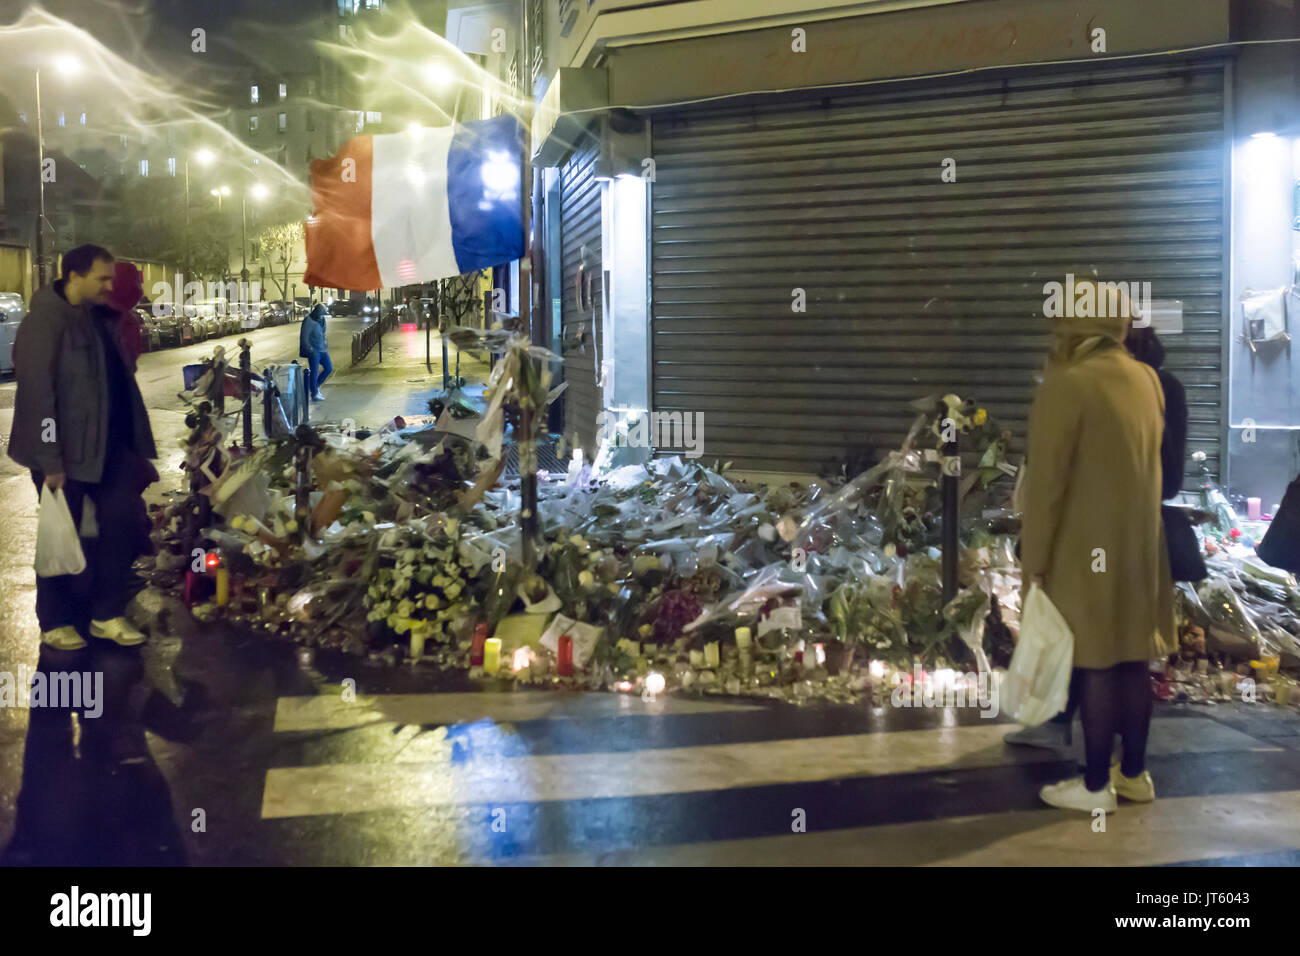 Le petit cambodge - rue de l'université. Hommage spontané à des victimes des attaques terroristes à Paris le 13 novembre 2015. Banque D'Images